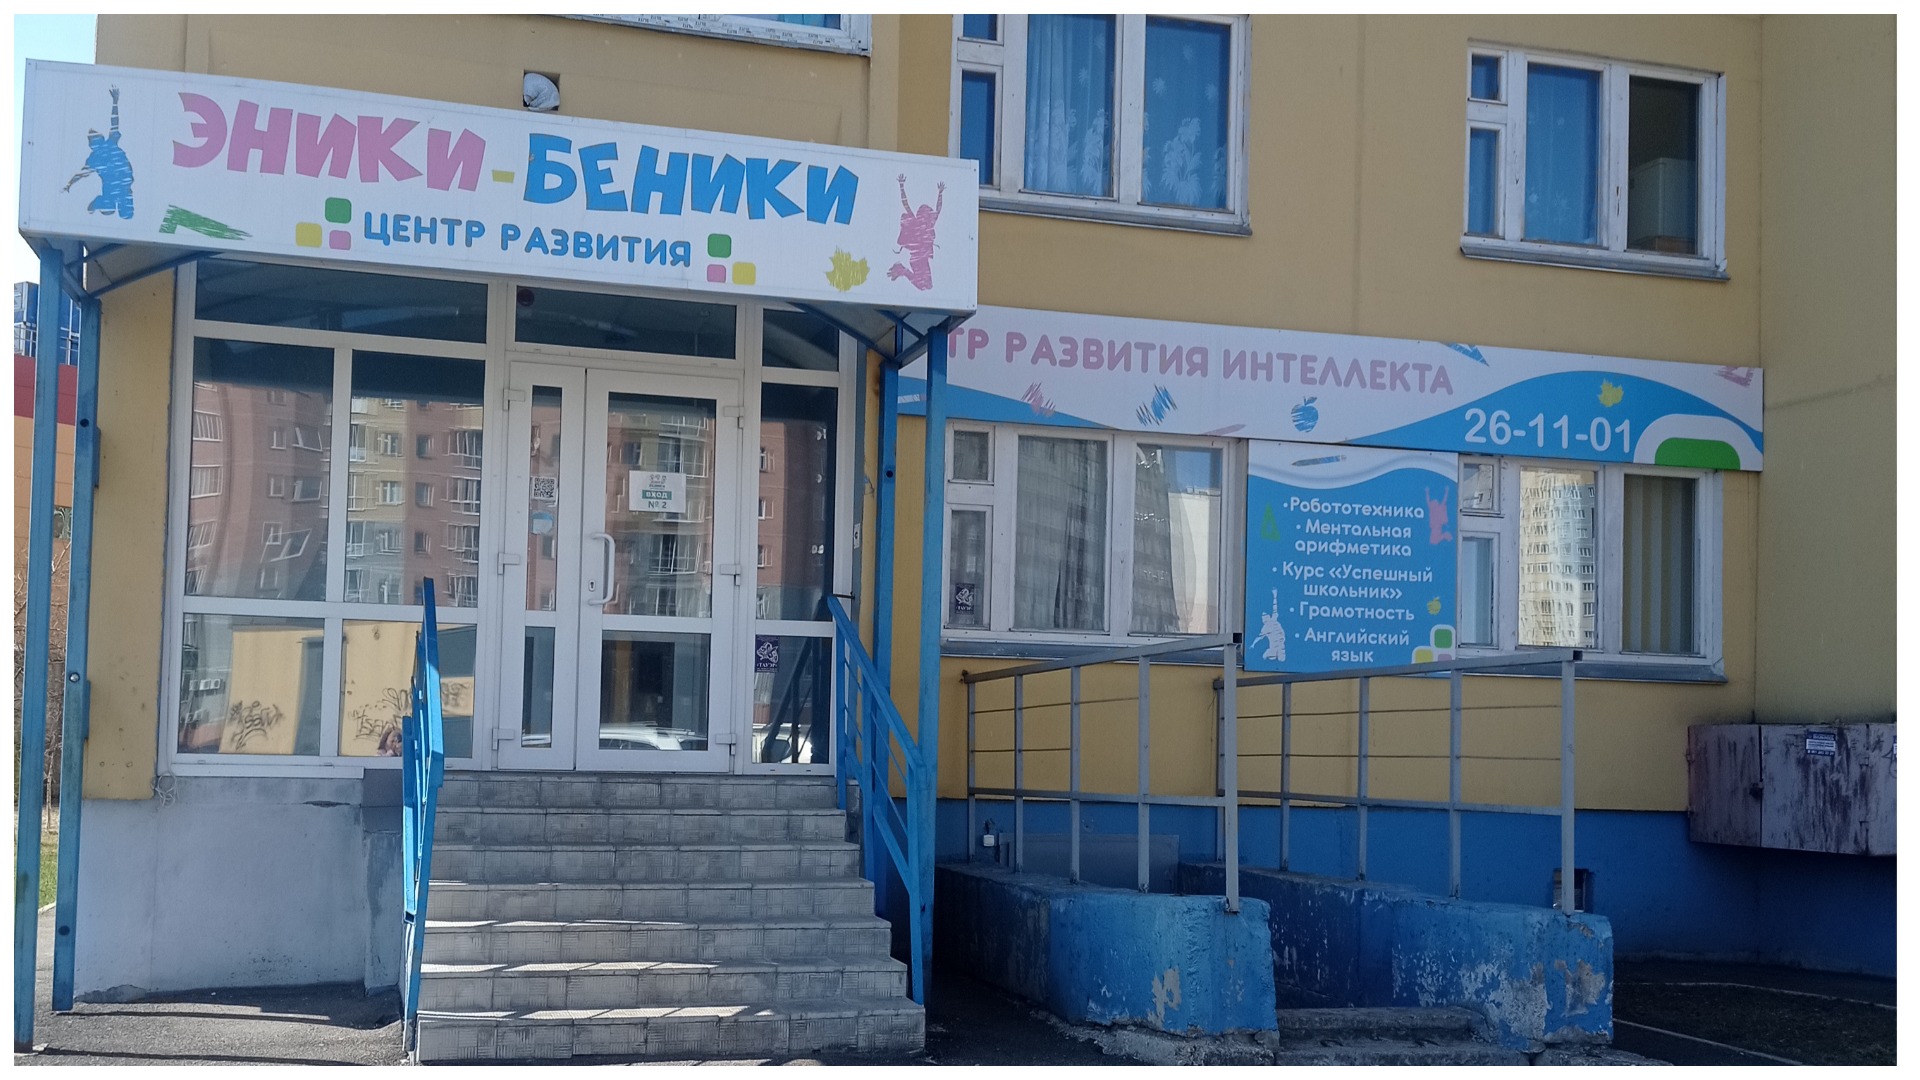 Детский развивающий центр "Эники-Беники", Иваново.